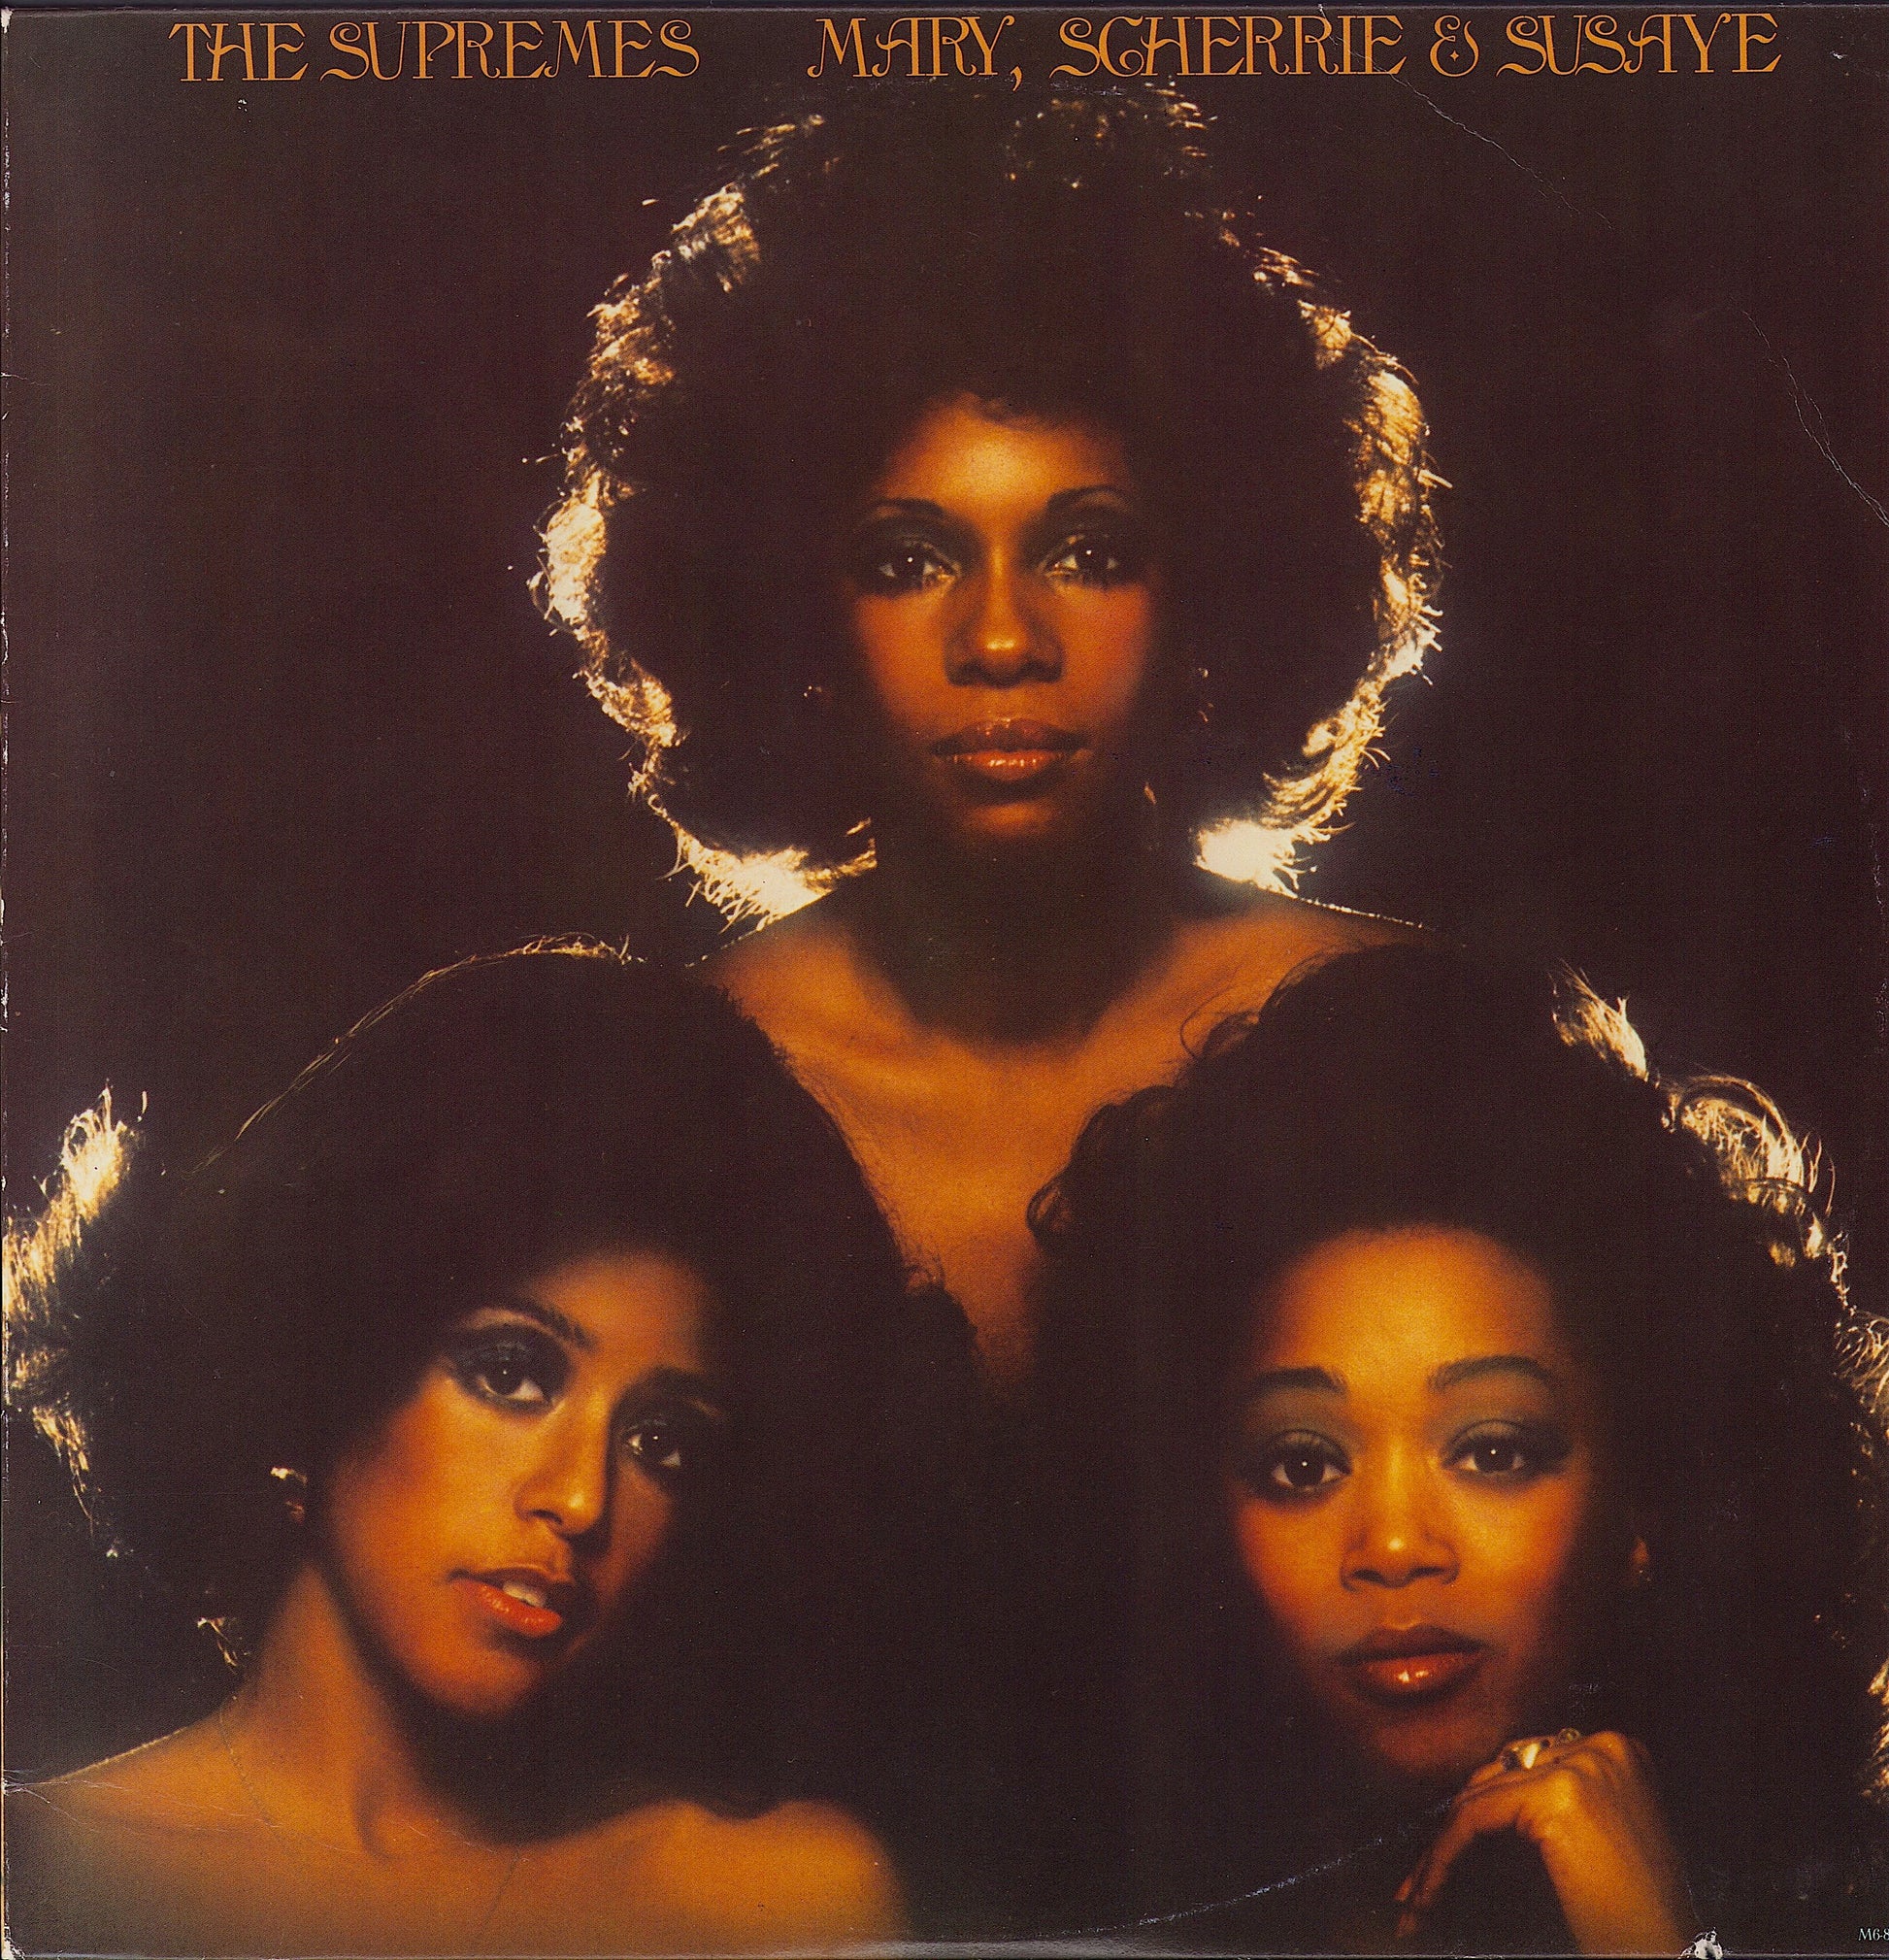 The Supremes ‎- Mary, Scherrie & Susaye (Vinyl LP)